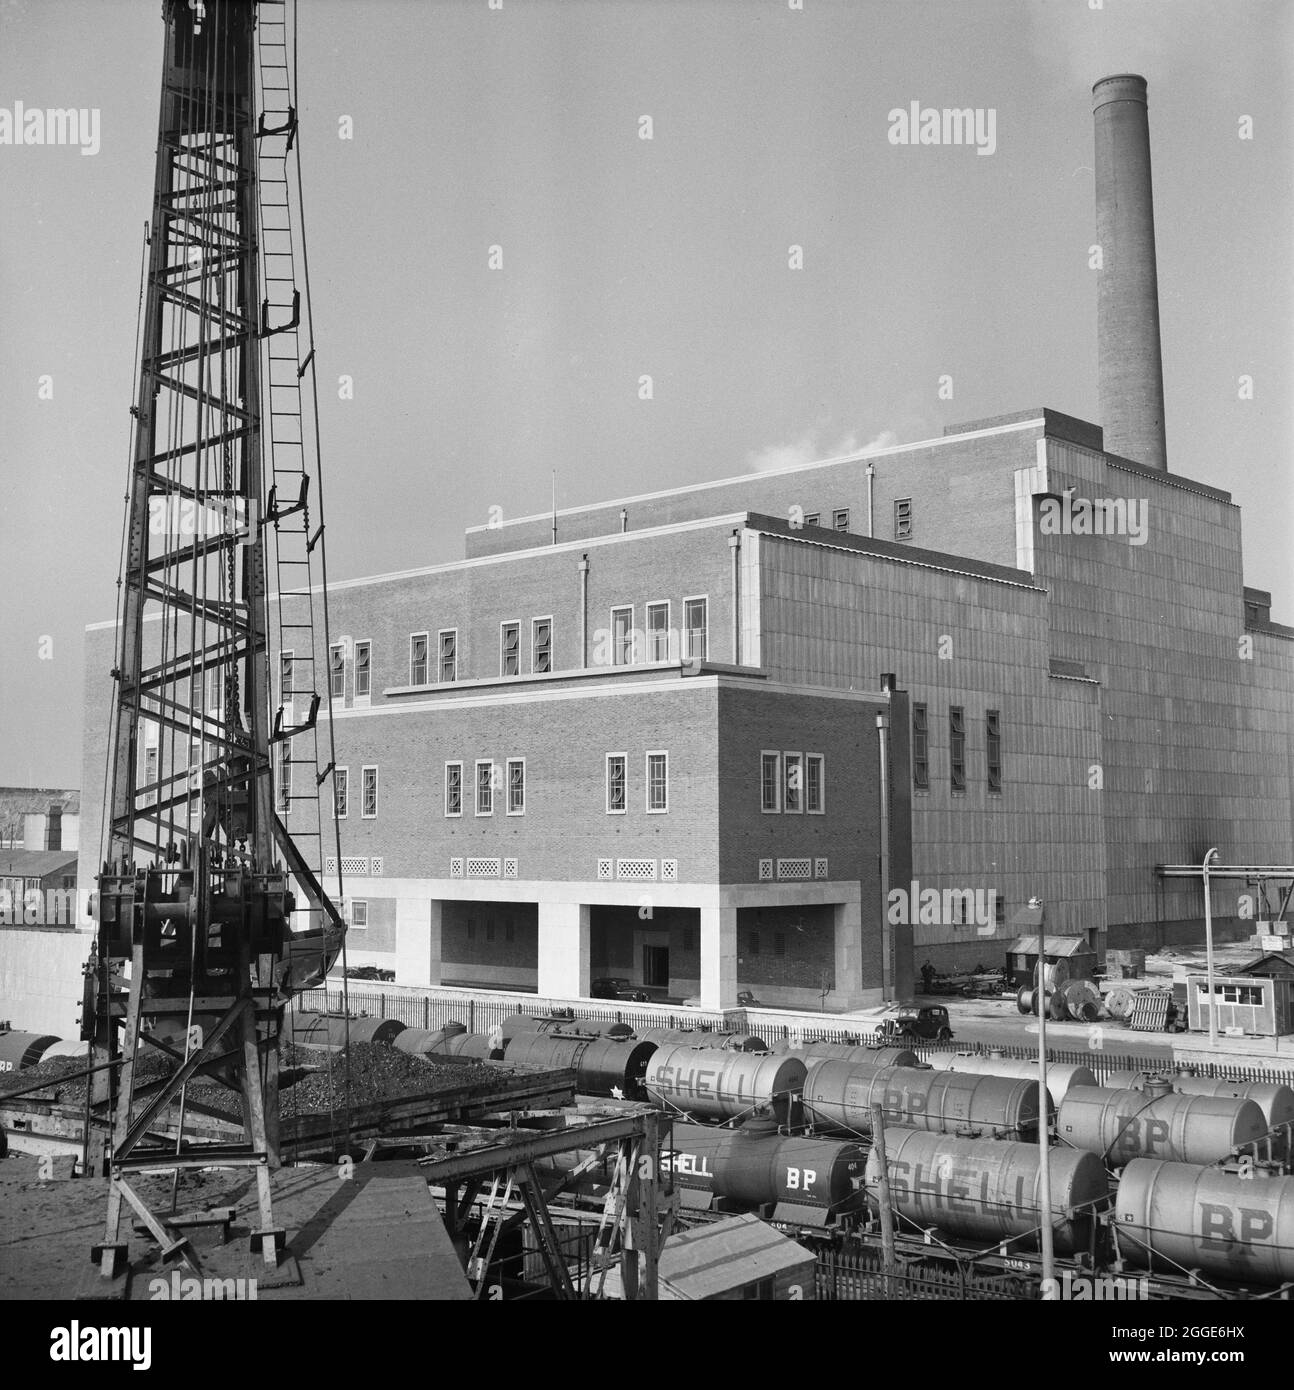 Ein Blick auf das Plymouth 'B' Kraftwerk mit einem Auflagerahmen im Vordergrund, aufgenommen während des Baus des Coaling Wharf der Station. Dieses Bild wurde als Teil des Breaking New Ground Project in Zusammenarbeit mit dem John Laing Charitable Trust in den Jahren 2019-20 katalogisiert. Stockfoto